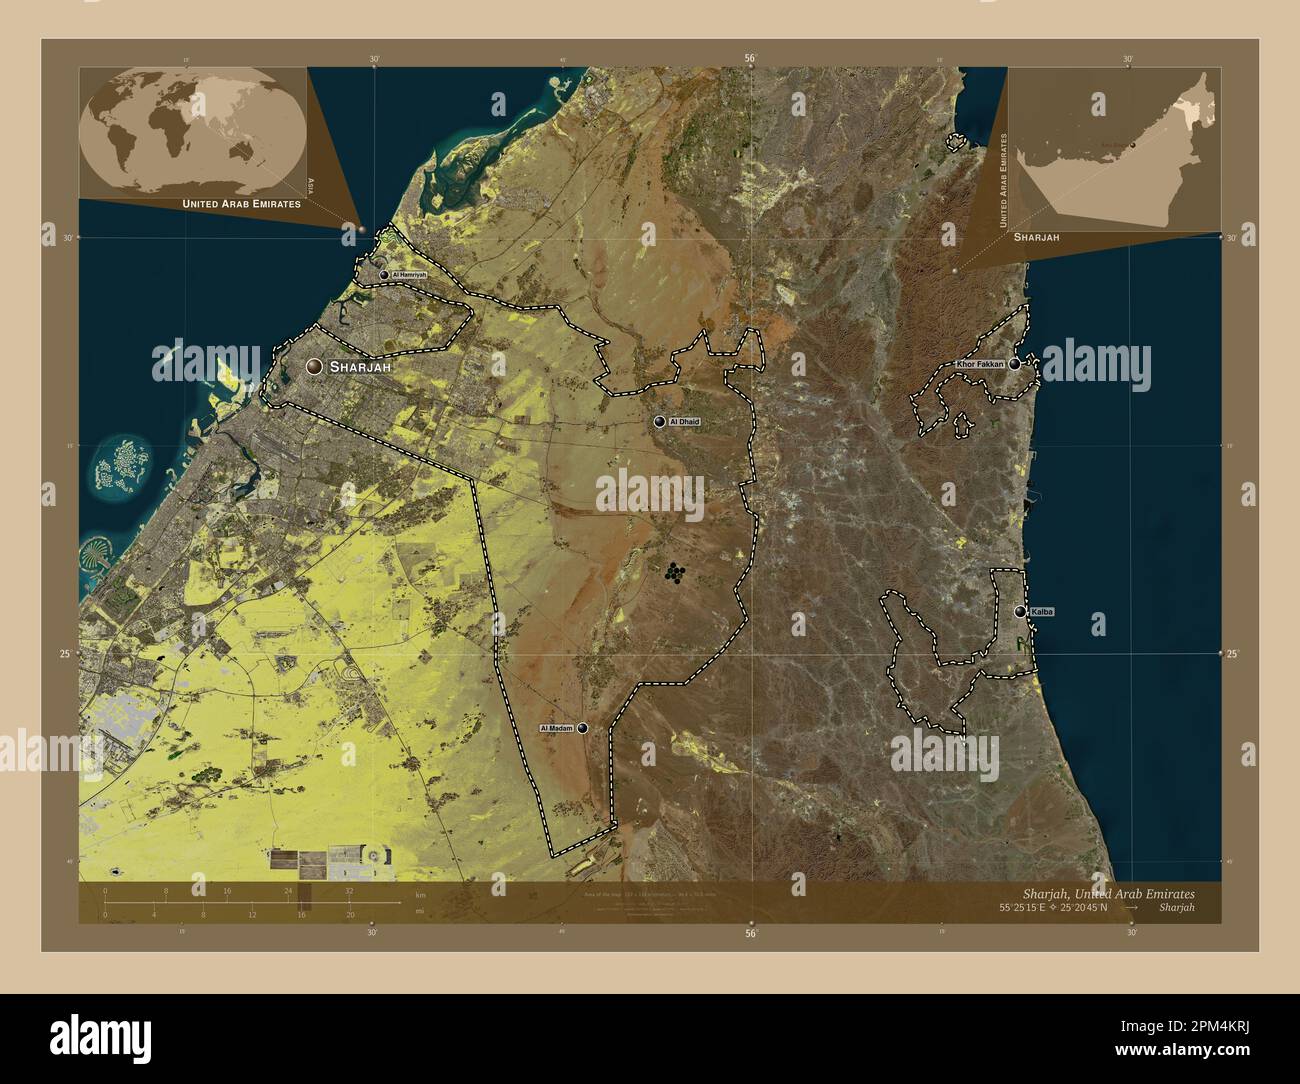 Sharjah, émirat des Émirats arabes Unis. Carte satellite basse résolution. Lieux et noms des principales villes de la région. Emplacement auxiliaire d'angle m Banque D'Images